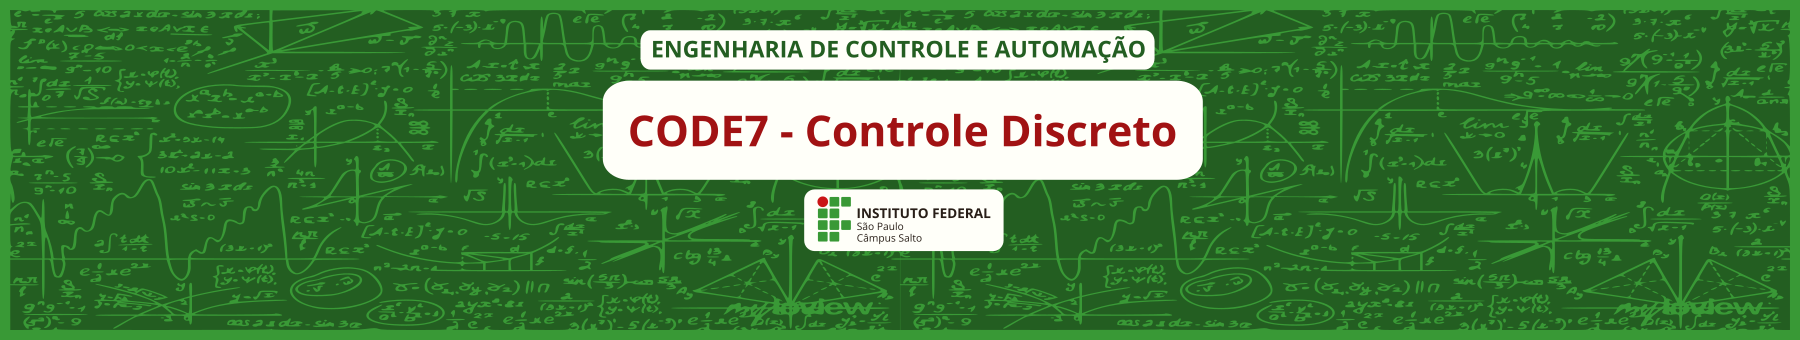 Controle Discreto - 1S2024